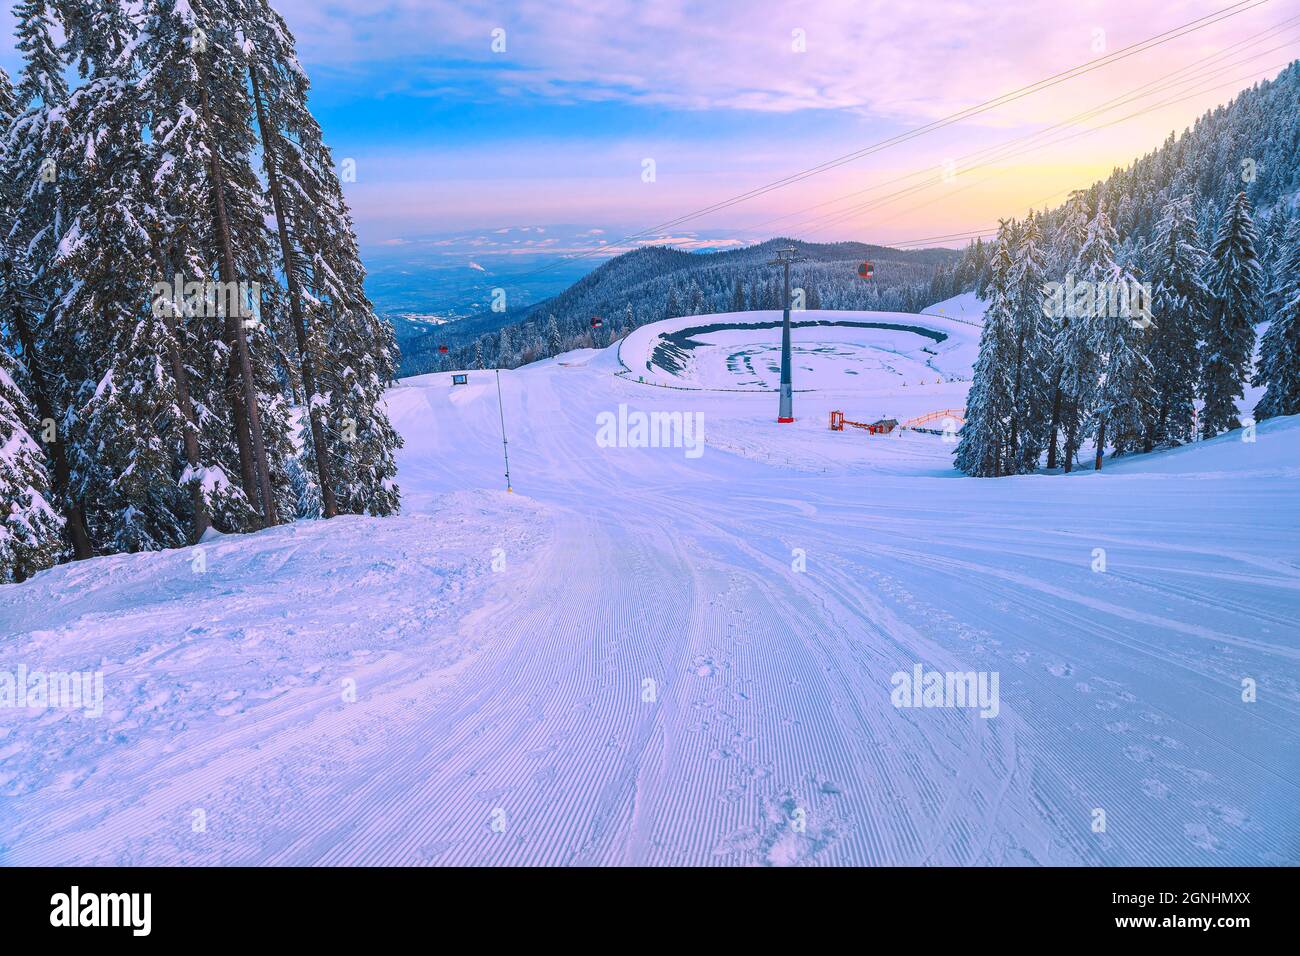 Favolosi pini innevati e stazione sciistica invernale con colorate gondole all'alba. Piste da sci e lago ghiacciato nella località di Poiana Brasov, Tran Foto Stock